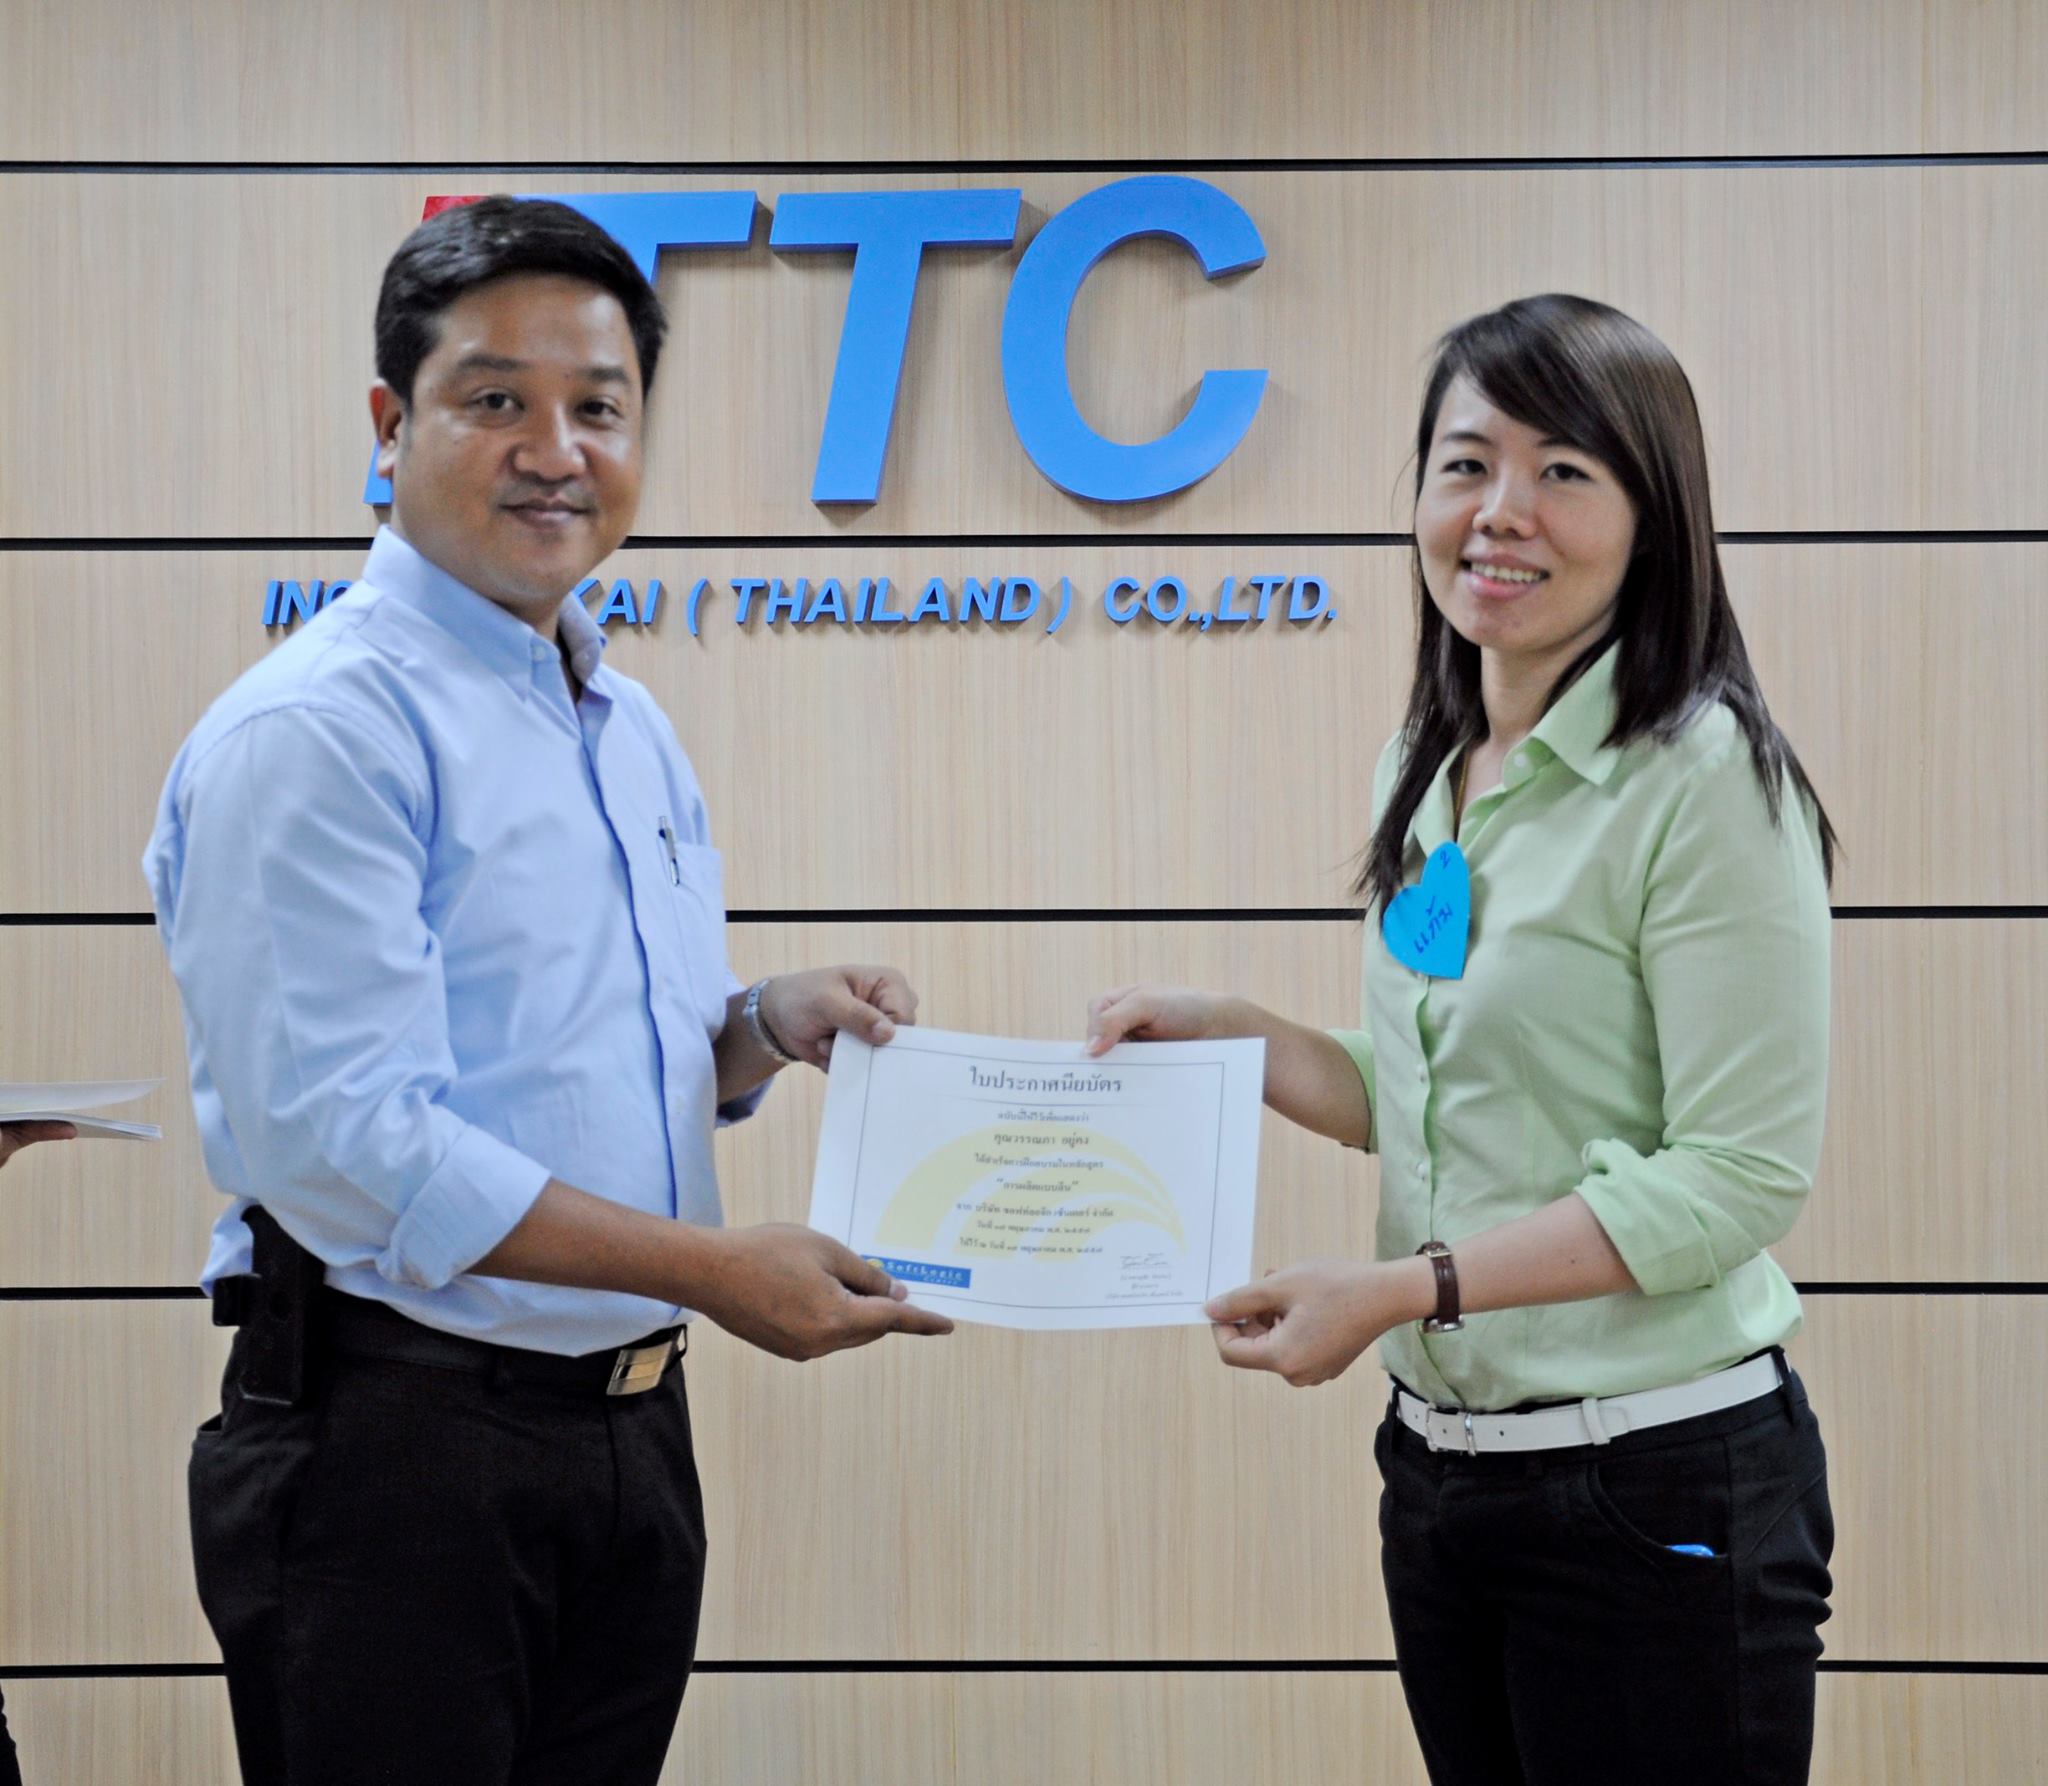 Inoac Tokai (Thailand) :  Lean Manufacturing